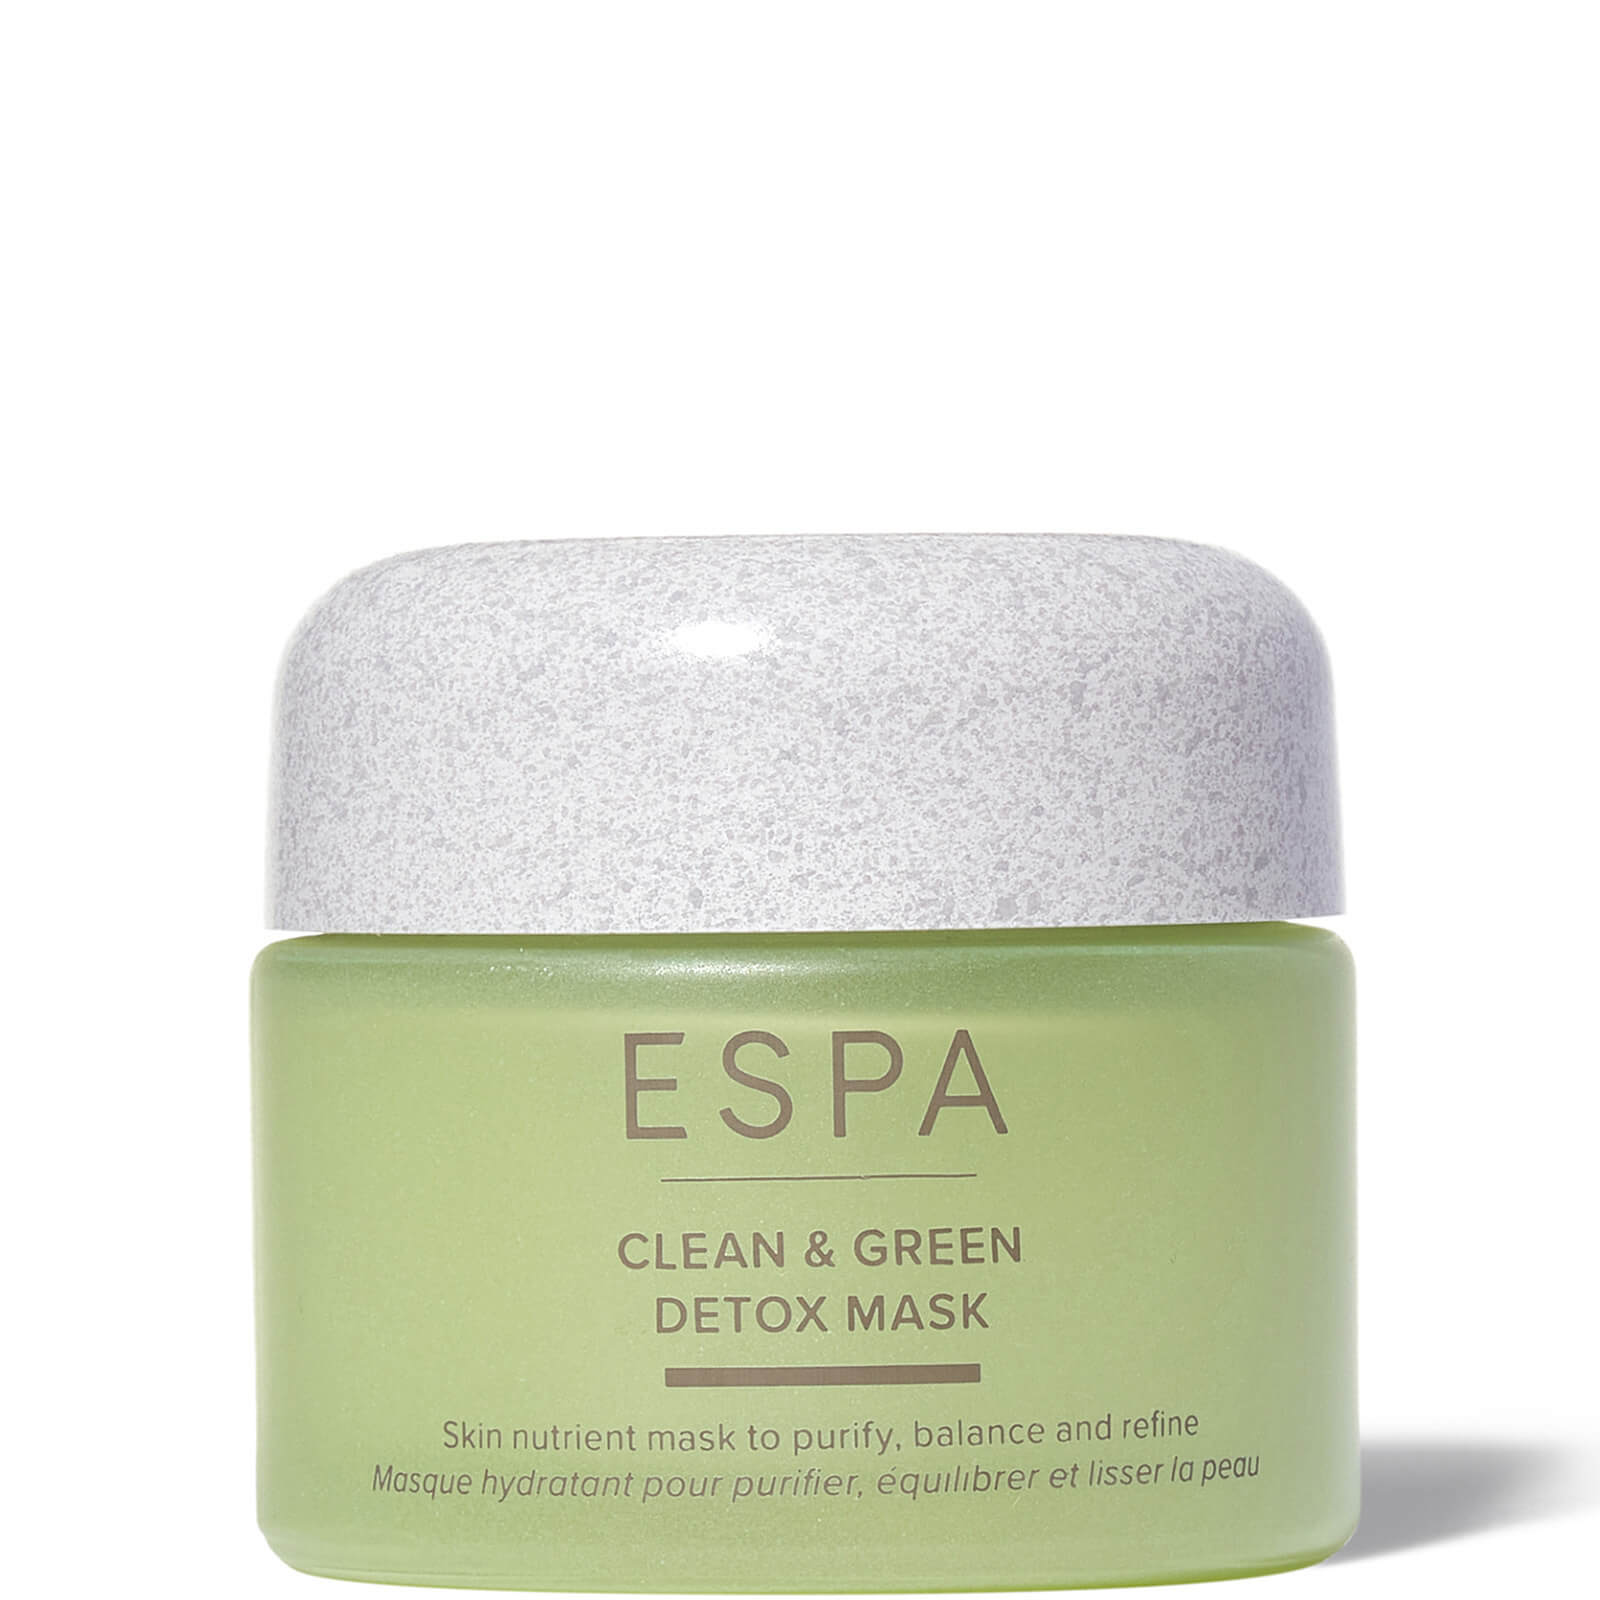 Espa Clean & Green Detox Mask